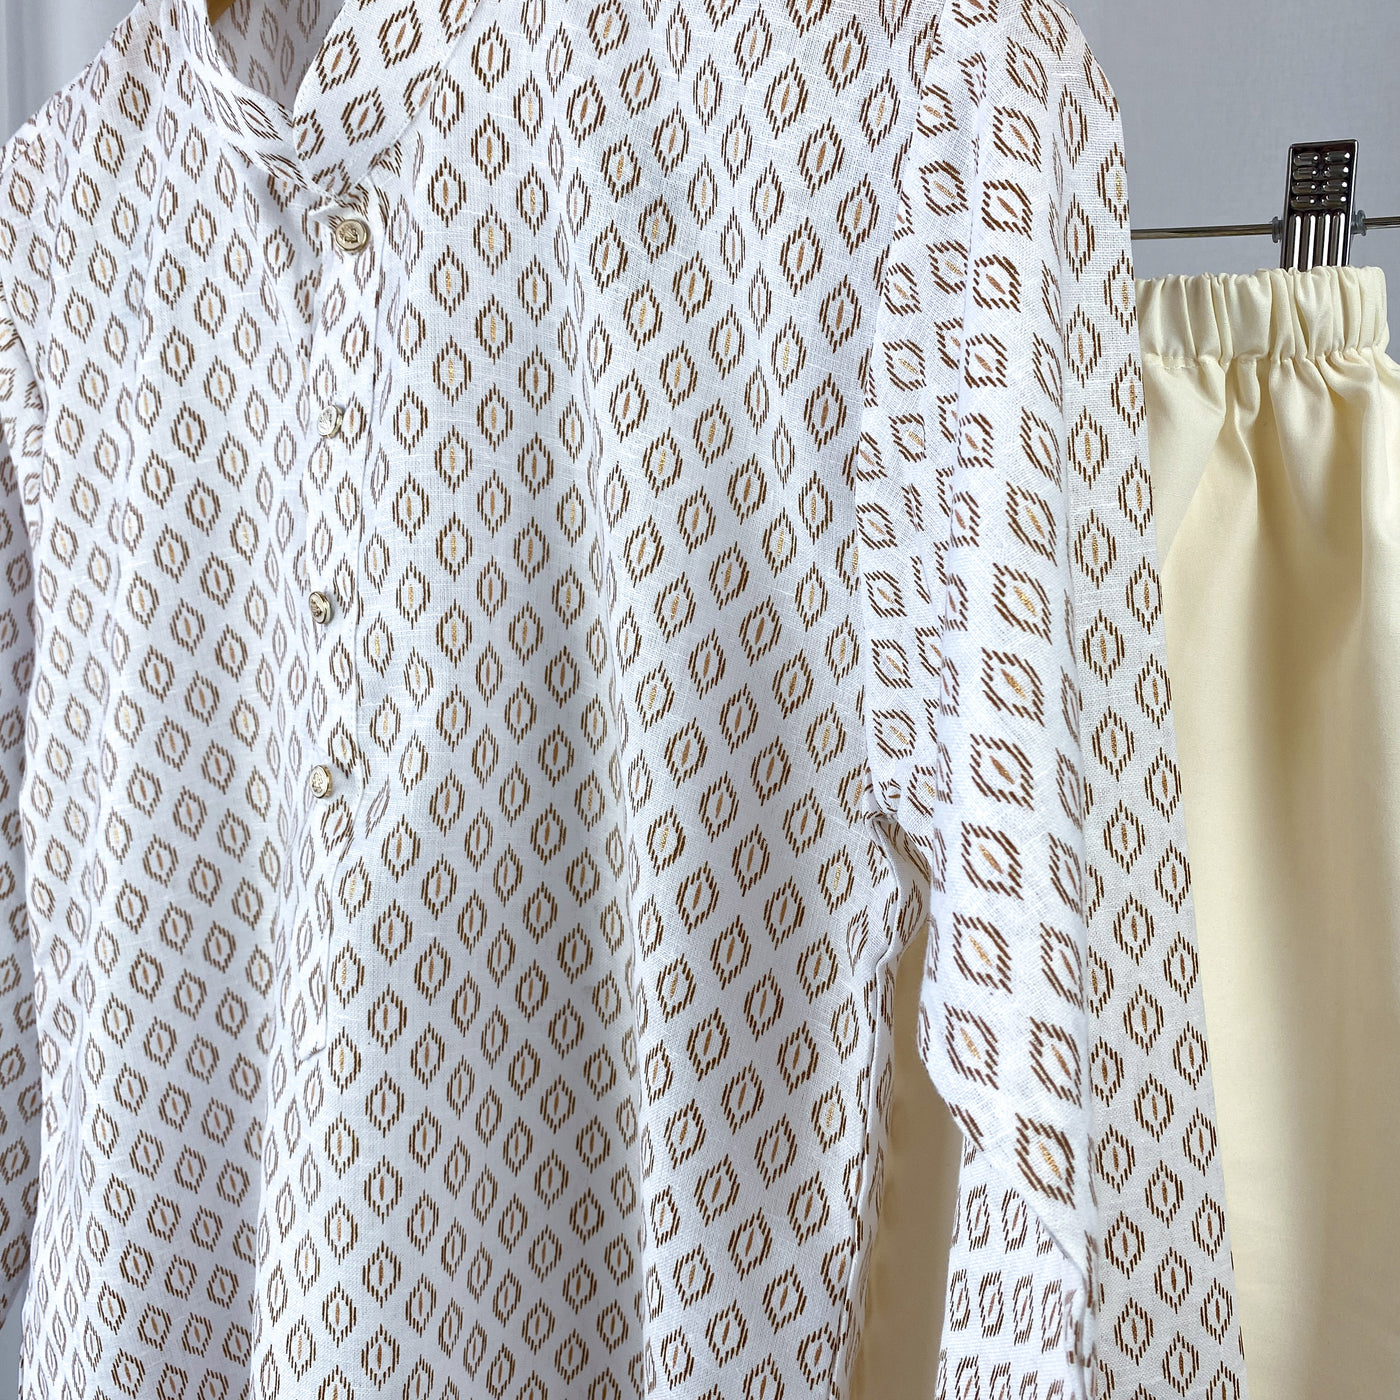 JATIN - Printed White and Brown Cotton Kurta Pajama